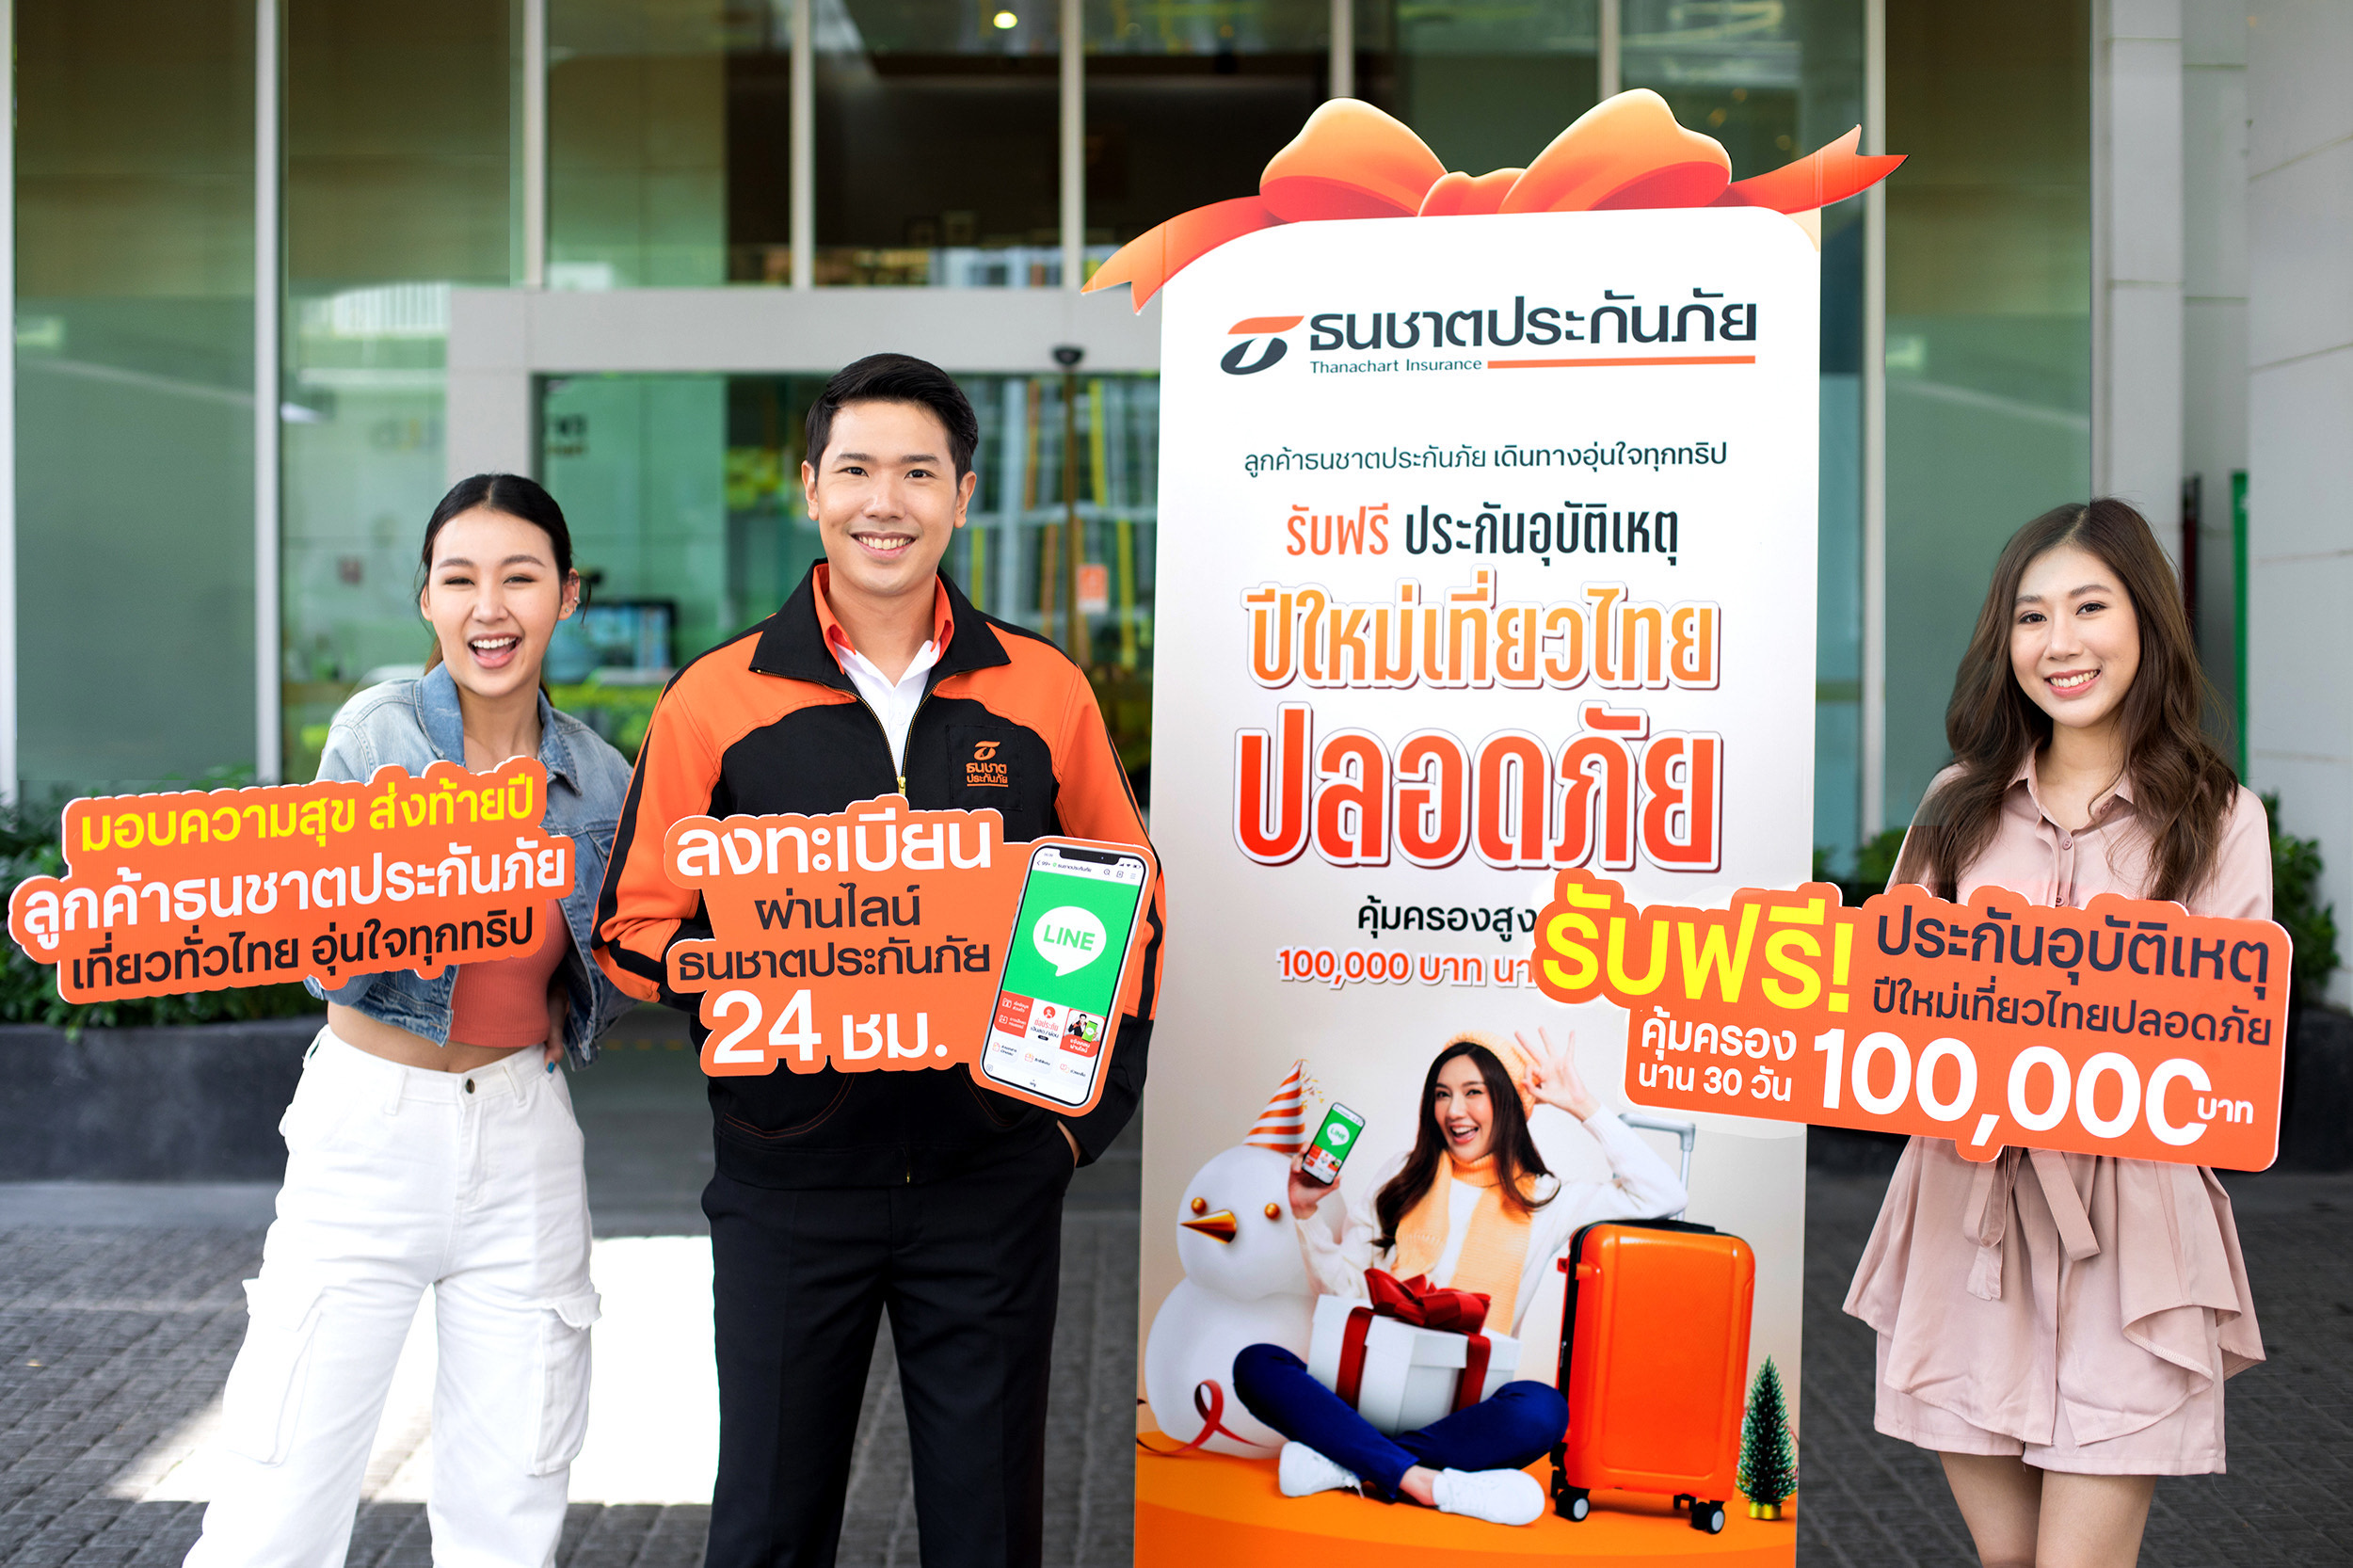 ปีใหม่เที่ยวไทยปลอดภัย ธนชาตประกันภัย แจกฟรี! ประกันอุบัติเหตุ คุ้มครองสูงสุด 100,000 บาท นาน 30 วัน